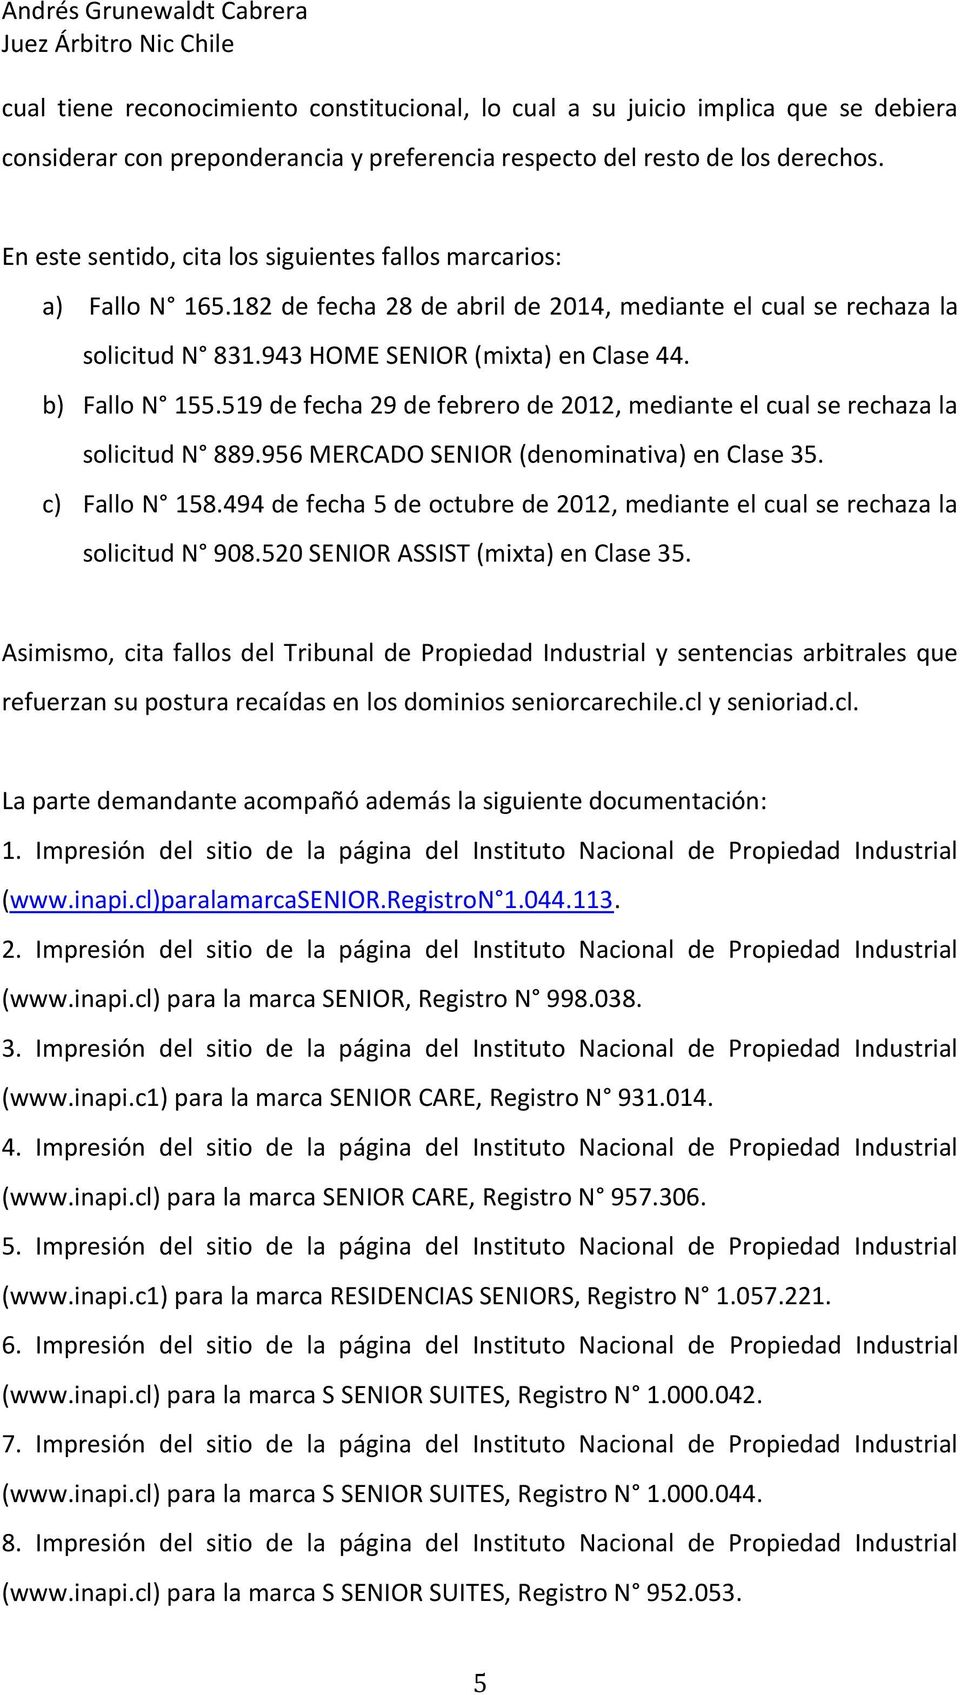 b) Fallo N 155.519 de fecha 29 de febrero de 2012, mediante el cual se rechaza la solicitud N 889.956 MERCADO SENIOR (denominativa) en Clase 35. c) Fallo N 158.